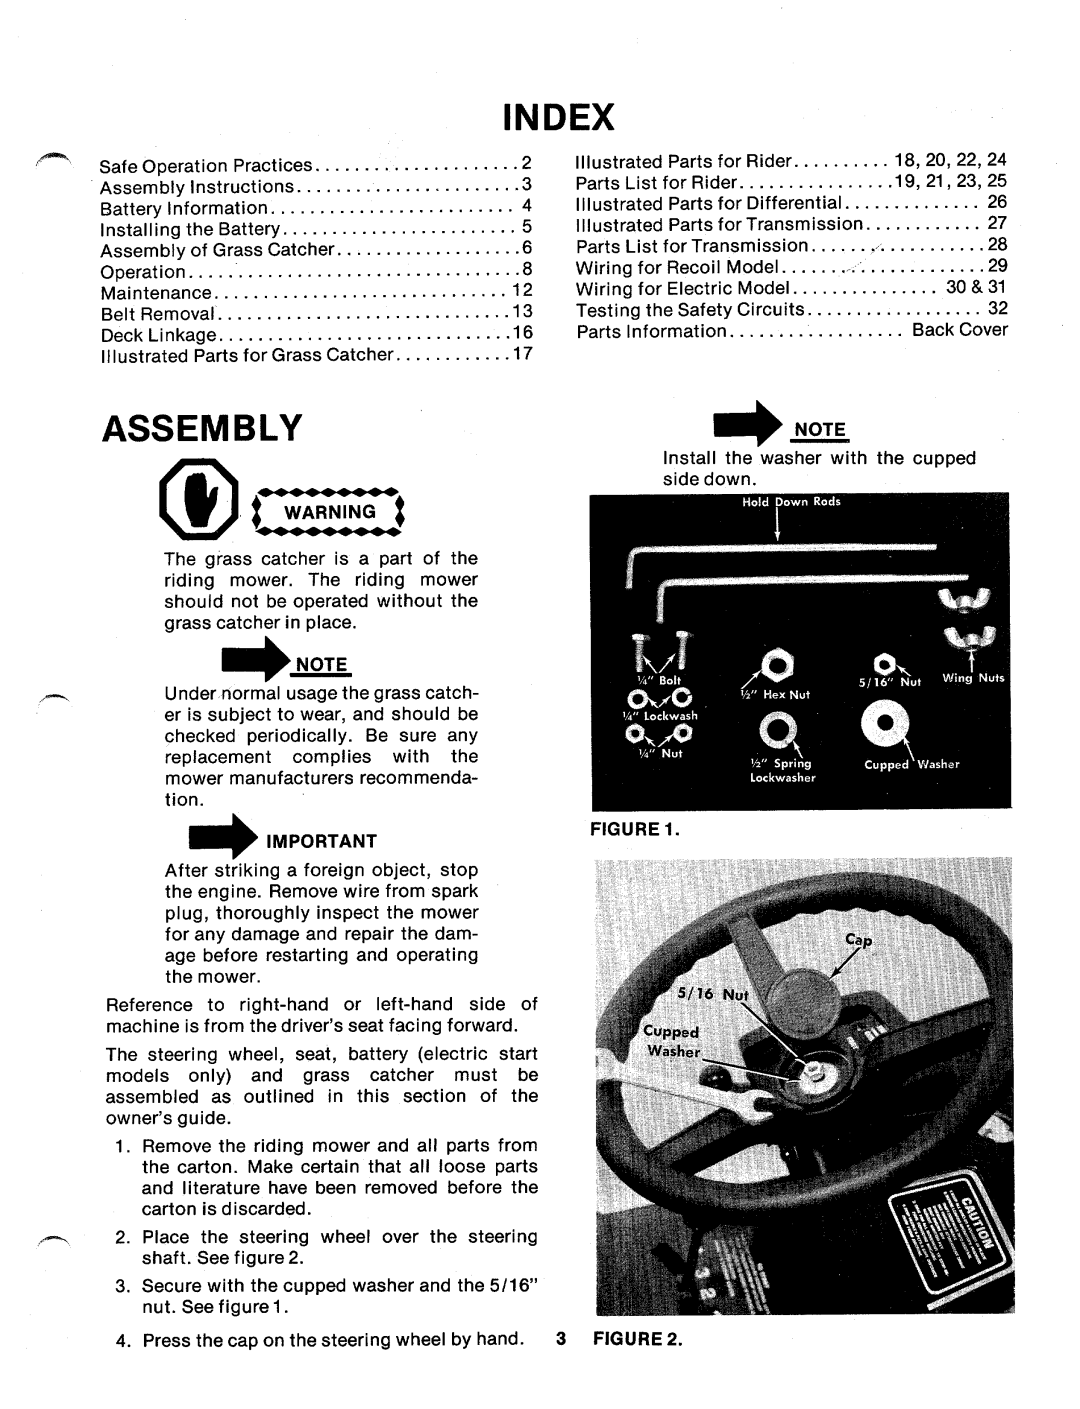 MTD 136-525A, 136-520A manual 